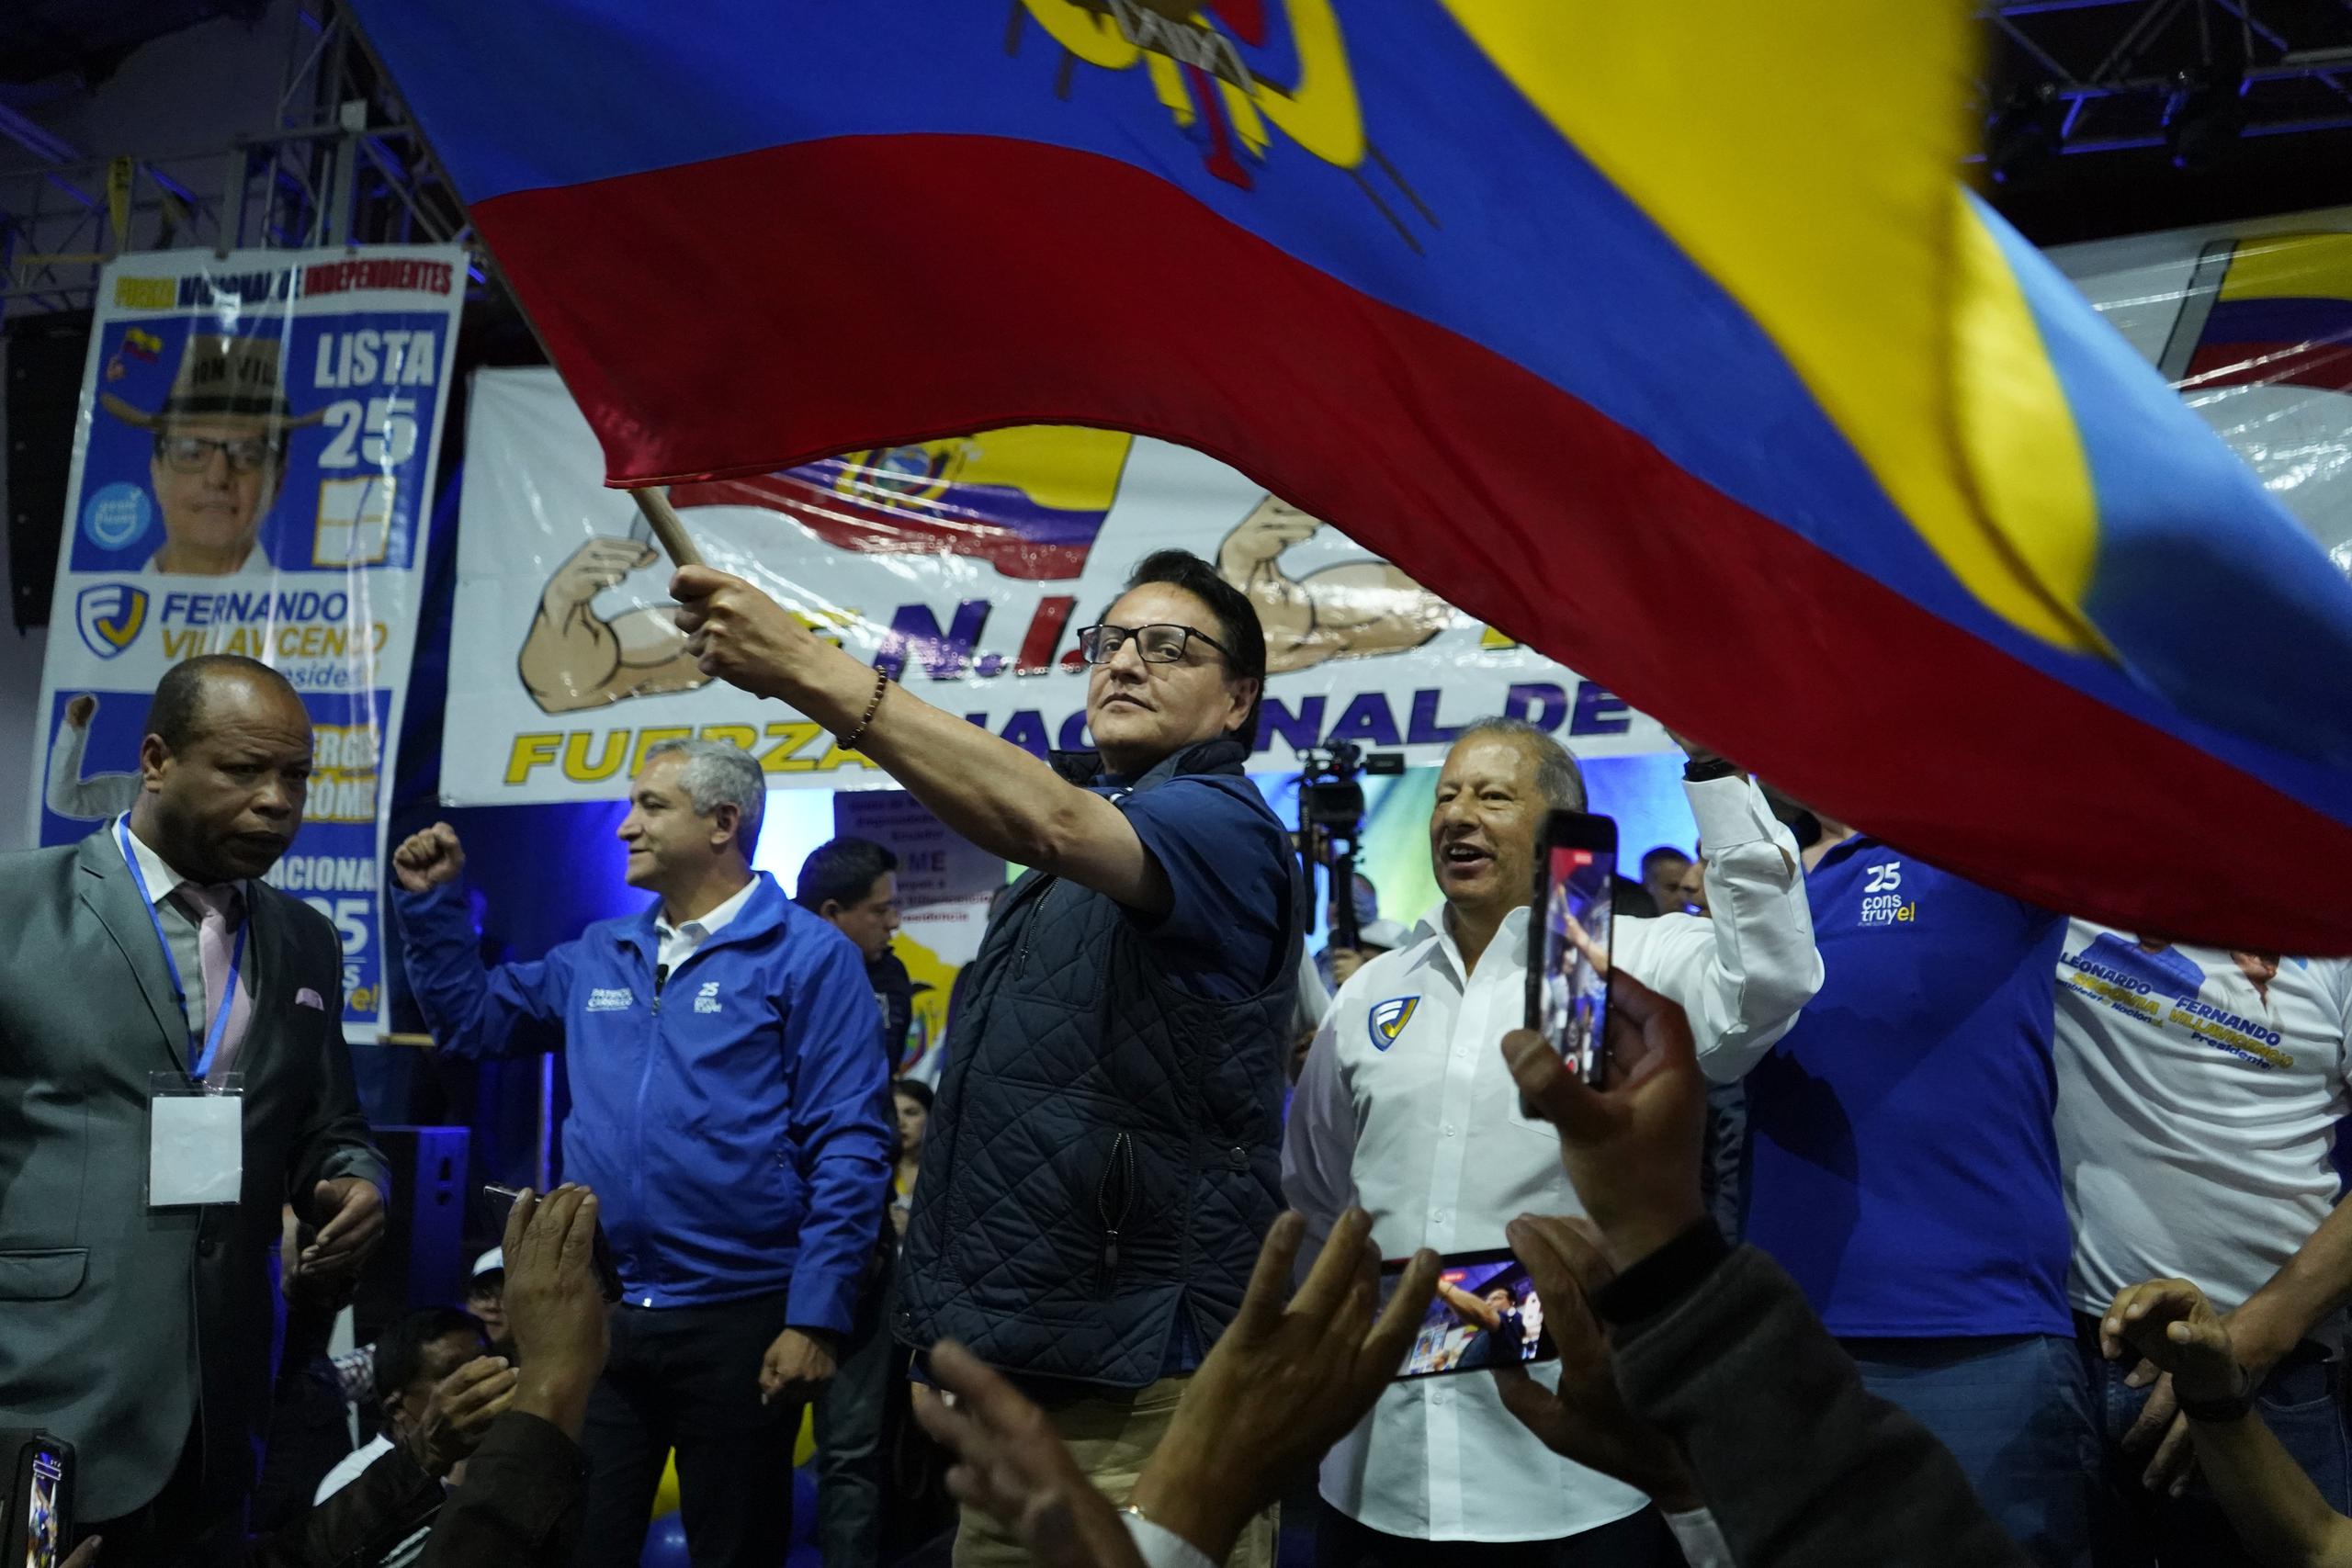 El candidato presidencial Fernando Villavicencio ondea una bandera nacional durante un evento de campaña en una escuela minutos antes de que lo mataran a tiros en Quito, Ecuador, el 9 de agosto de 2023.